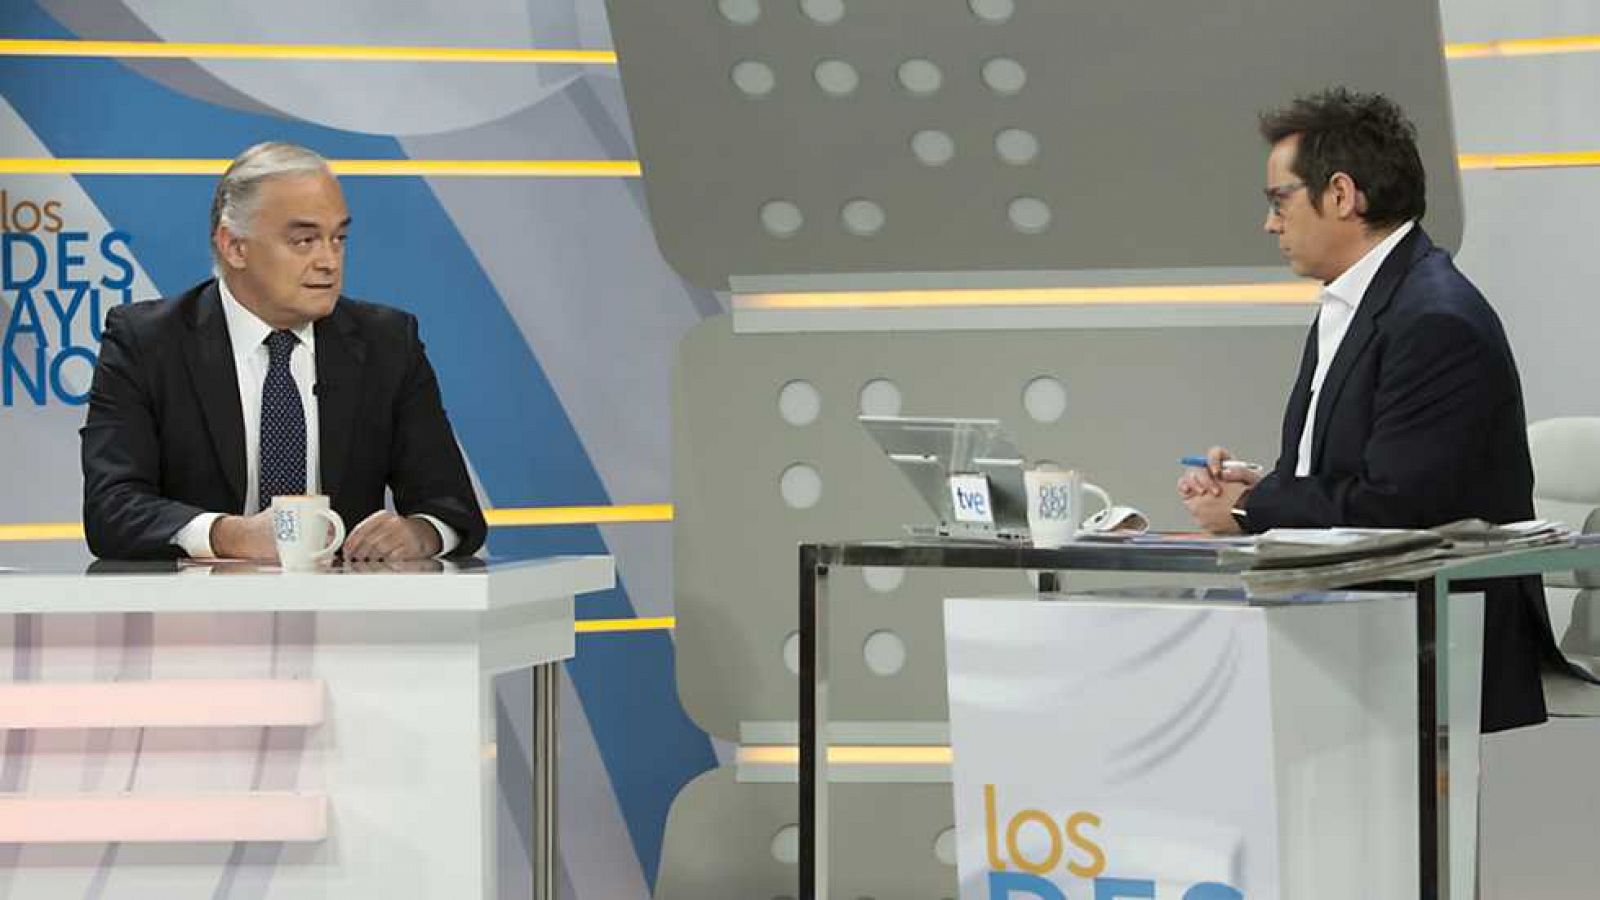 Los desayunos de TVE - Esteban González Pons, portavoz del Partido Popular en el Parlamento Europeo